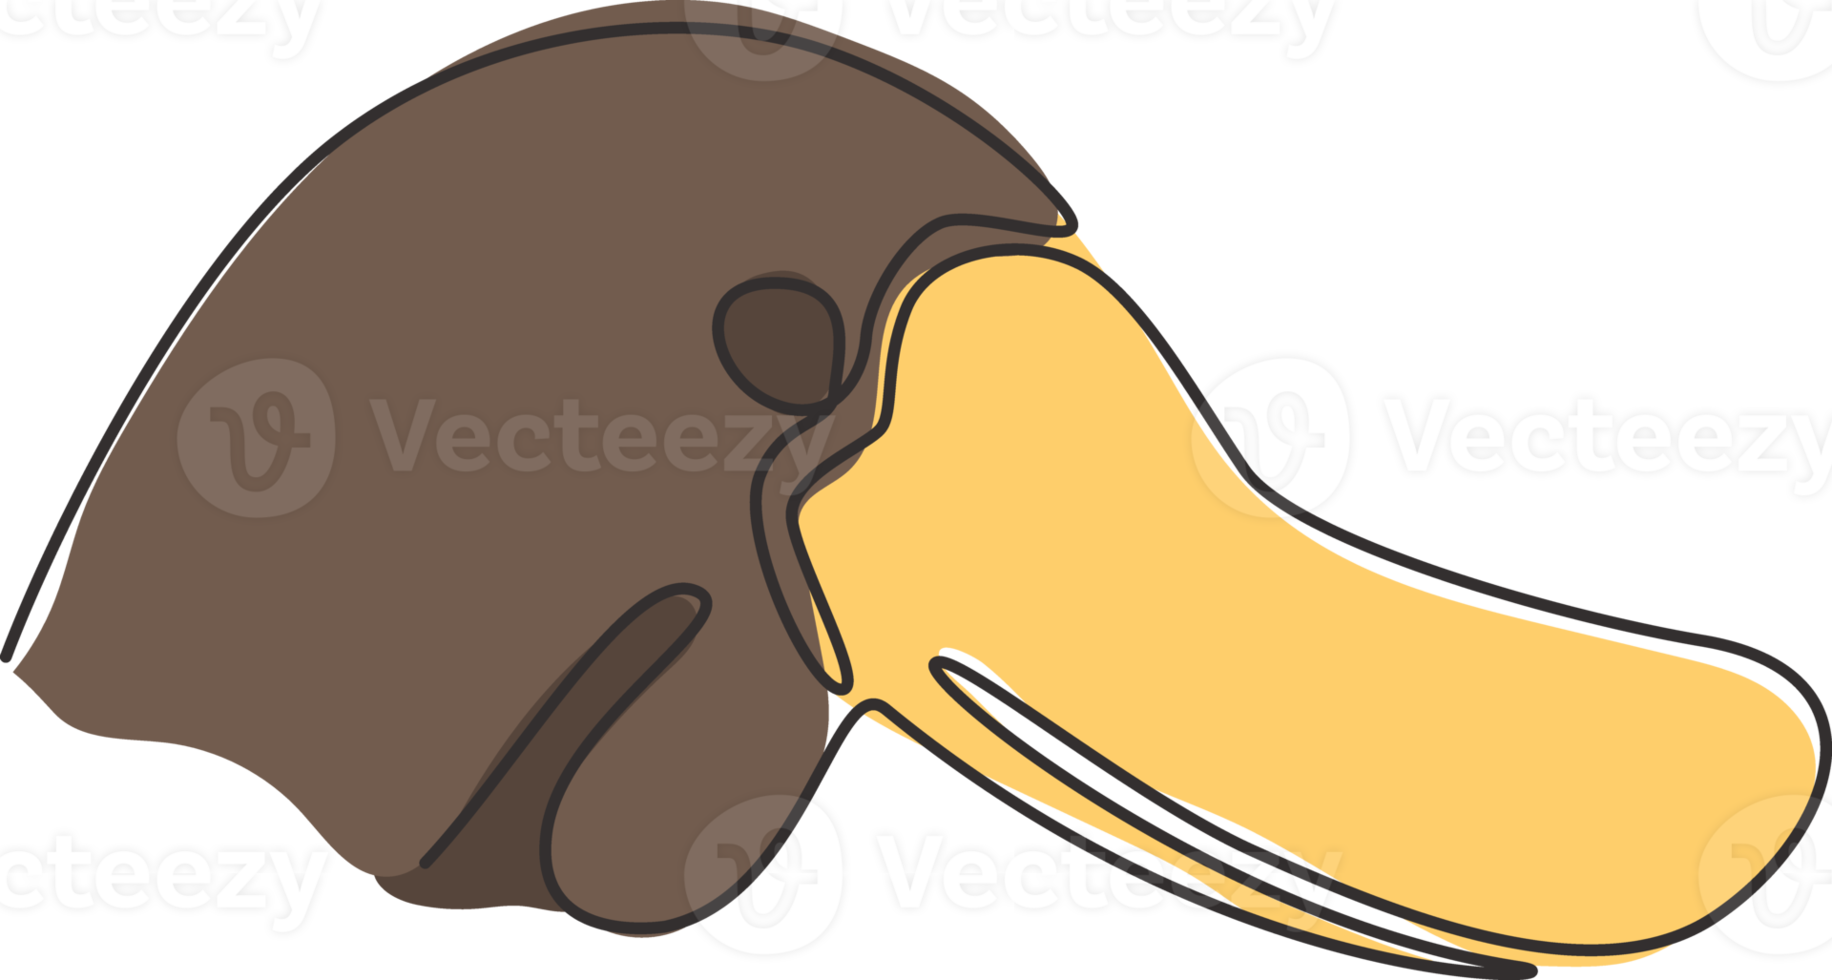 un dibujo de una sola línea de la cabeza de ornitorrinco inteligente única para la identidad del logotipo. concepto de mascota animal australiano típico para el icono del parque nacional. Ilustración de vector de diseño de dibujo gráfico de línea continua de moda png